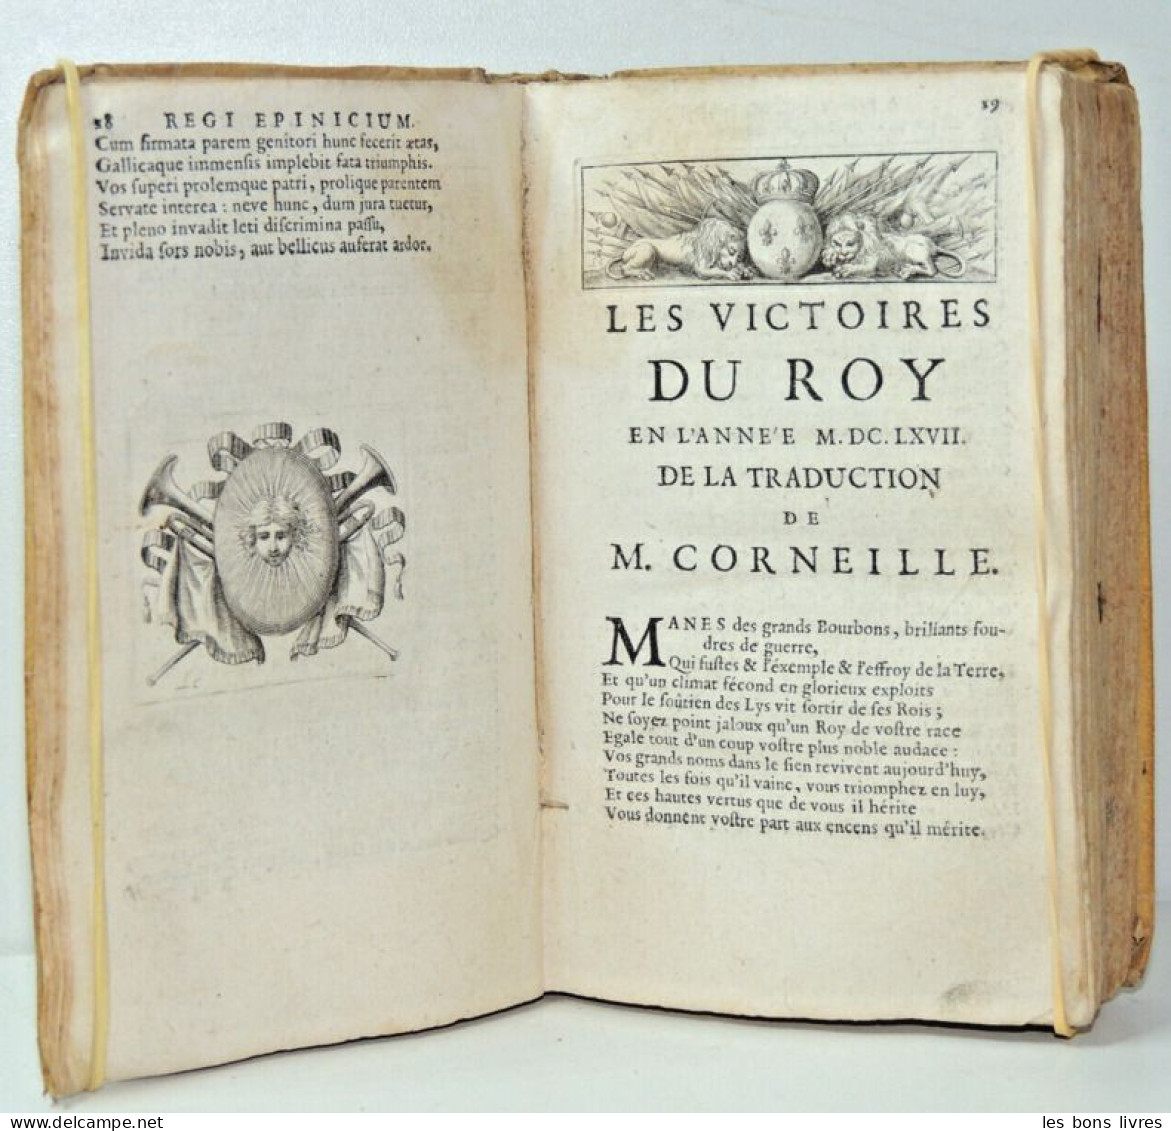 Rare. 1669. Ex manuscrit de Jean de la Fontaine. Caroli de la Rue. Idyllia.